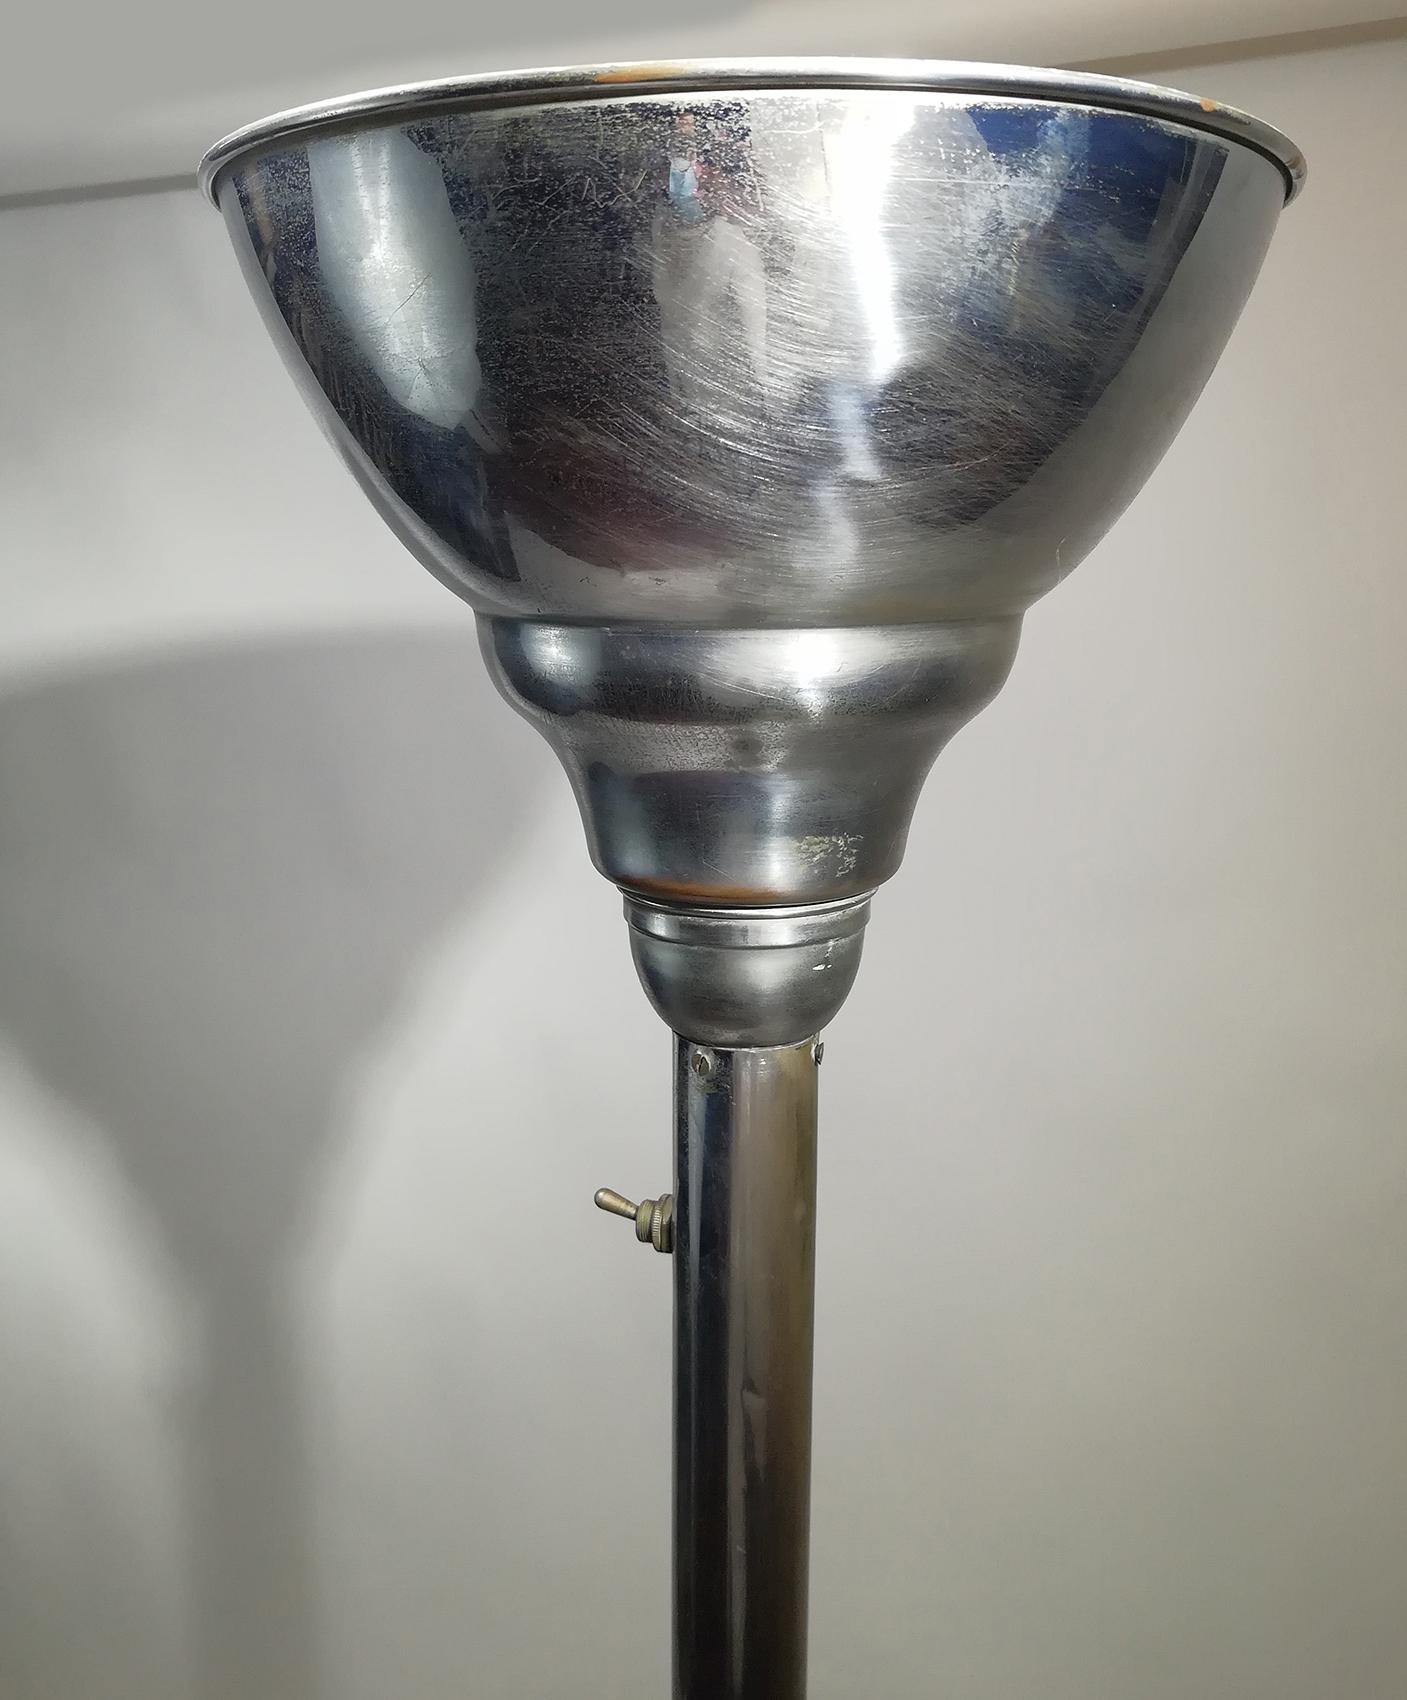 Ce lampadaire Art Déco se compose d'une base ronde, d'une tige et d'une torchère à trompette, le tout en aluminium.
Il donne le meilleur éclairage d'ambiance à une pièce.
Il peut accueillir une ampoule candélabre de 150 watts
Peut être livré et